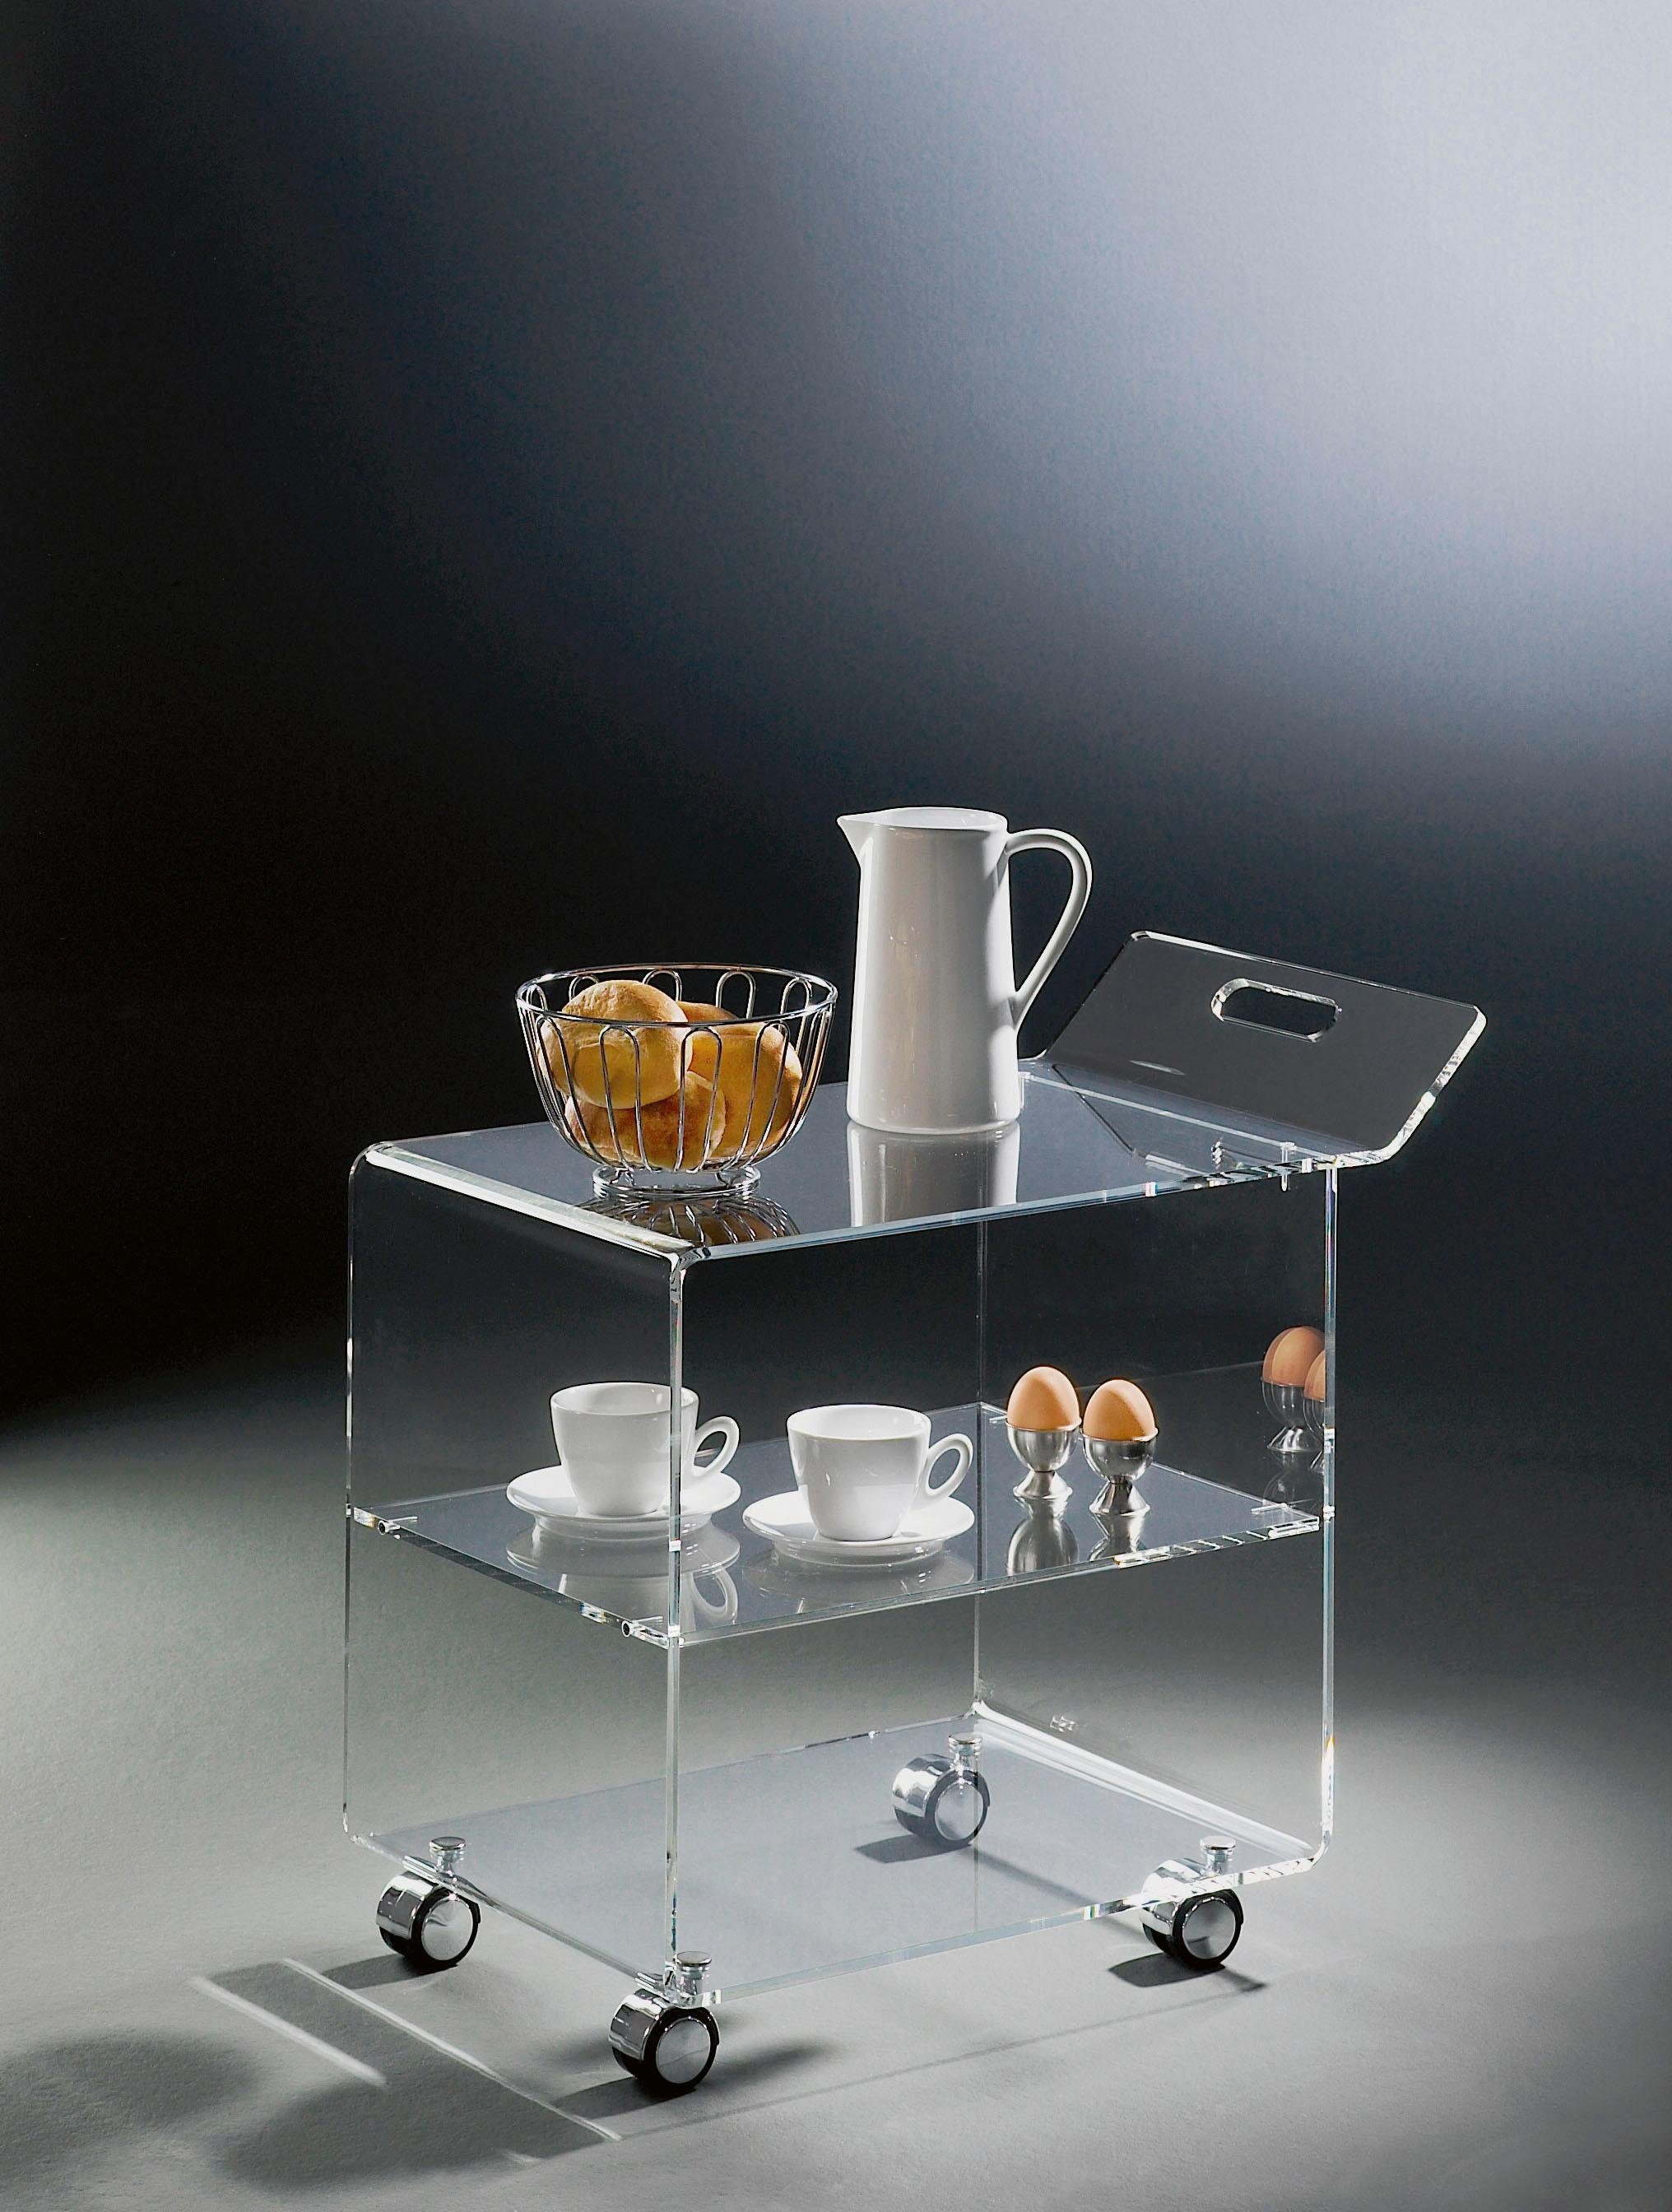 Küchenwagen aus of Places Remus, Acrylglas Style